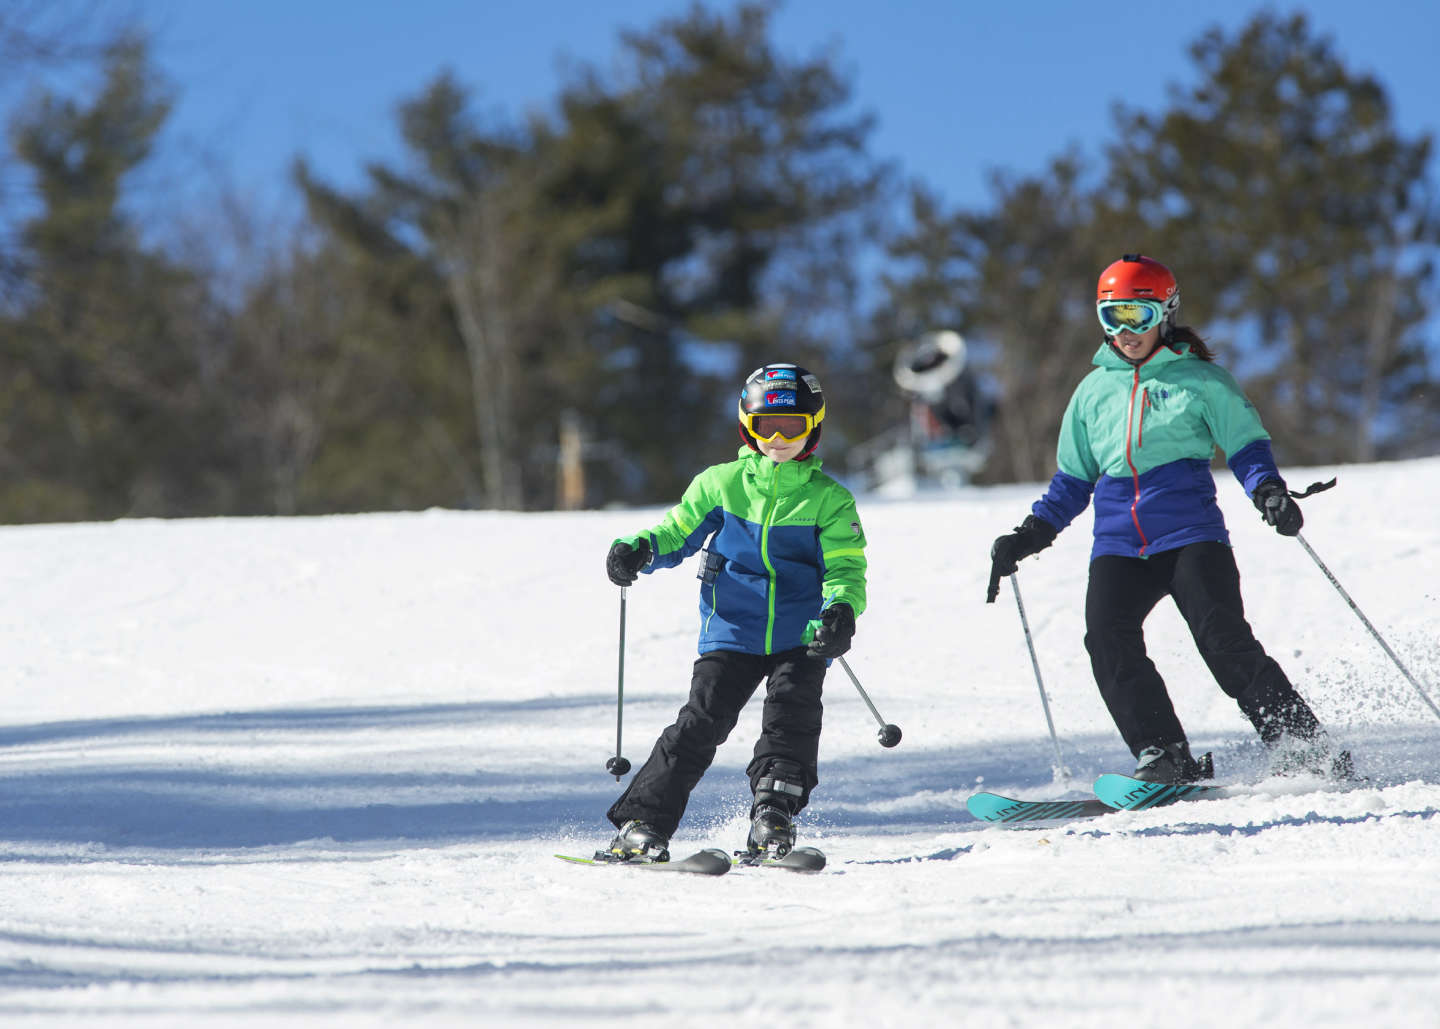 Катание на лыжах, развлечение для всей семьи